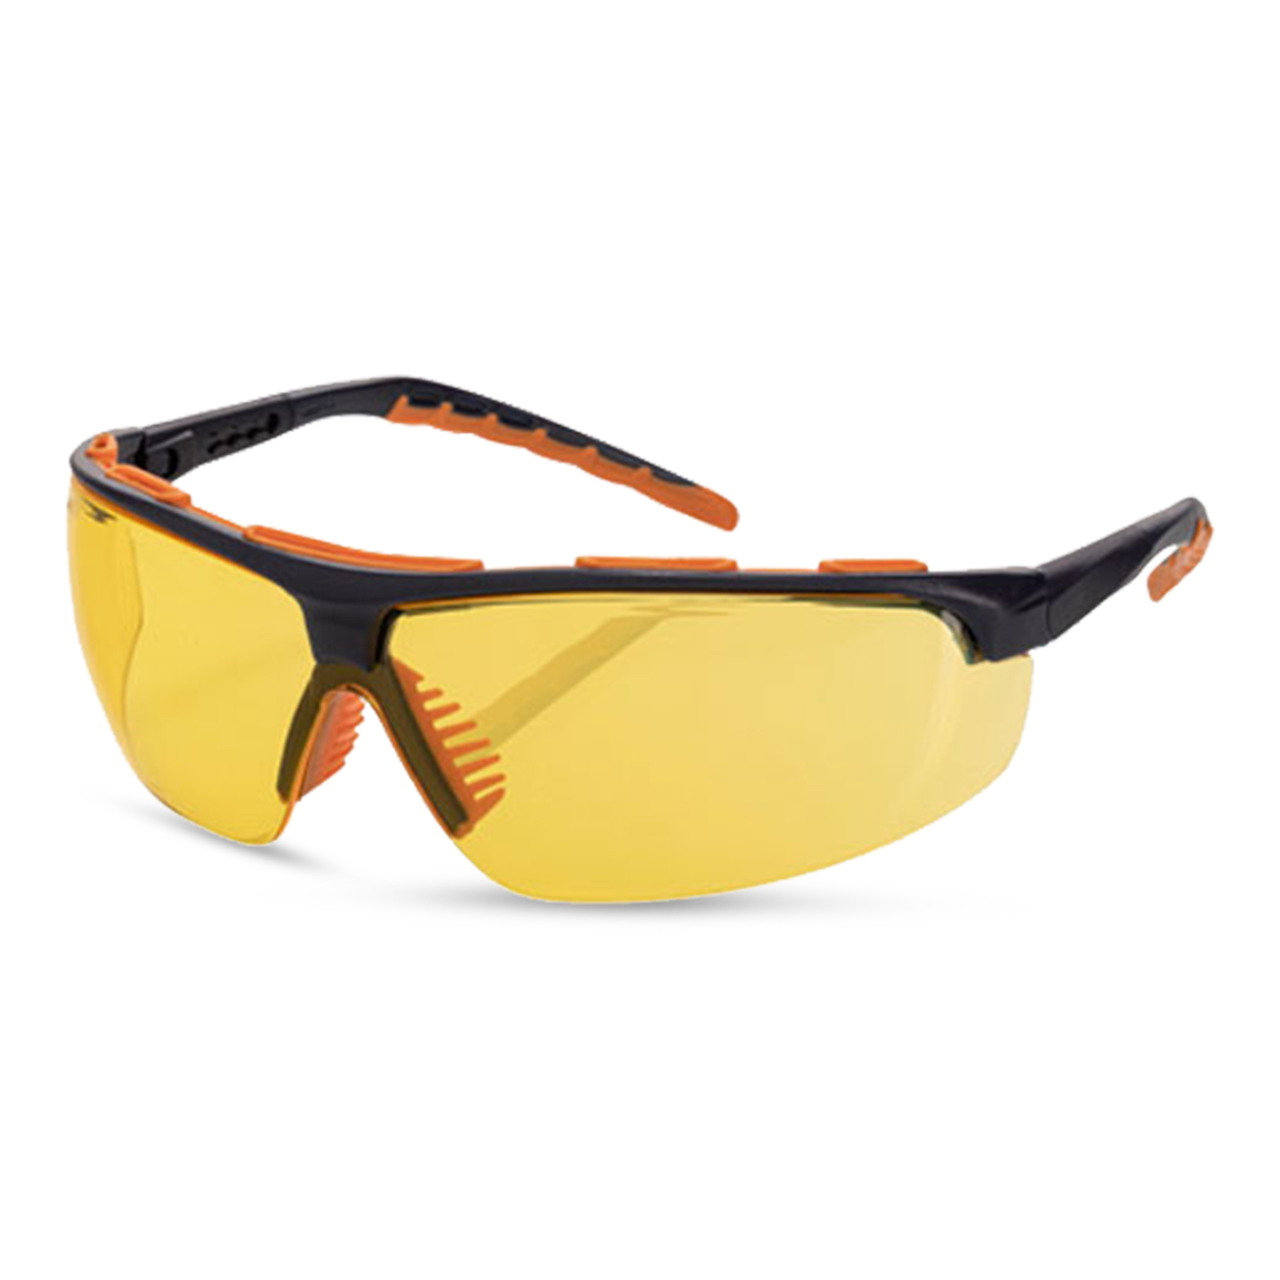 ARTISPEC® 300 Schutzbrille navy-blue orange/yellow